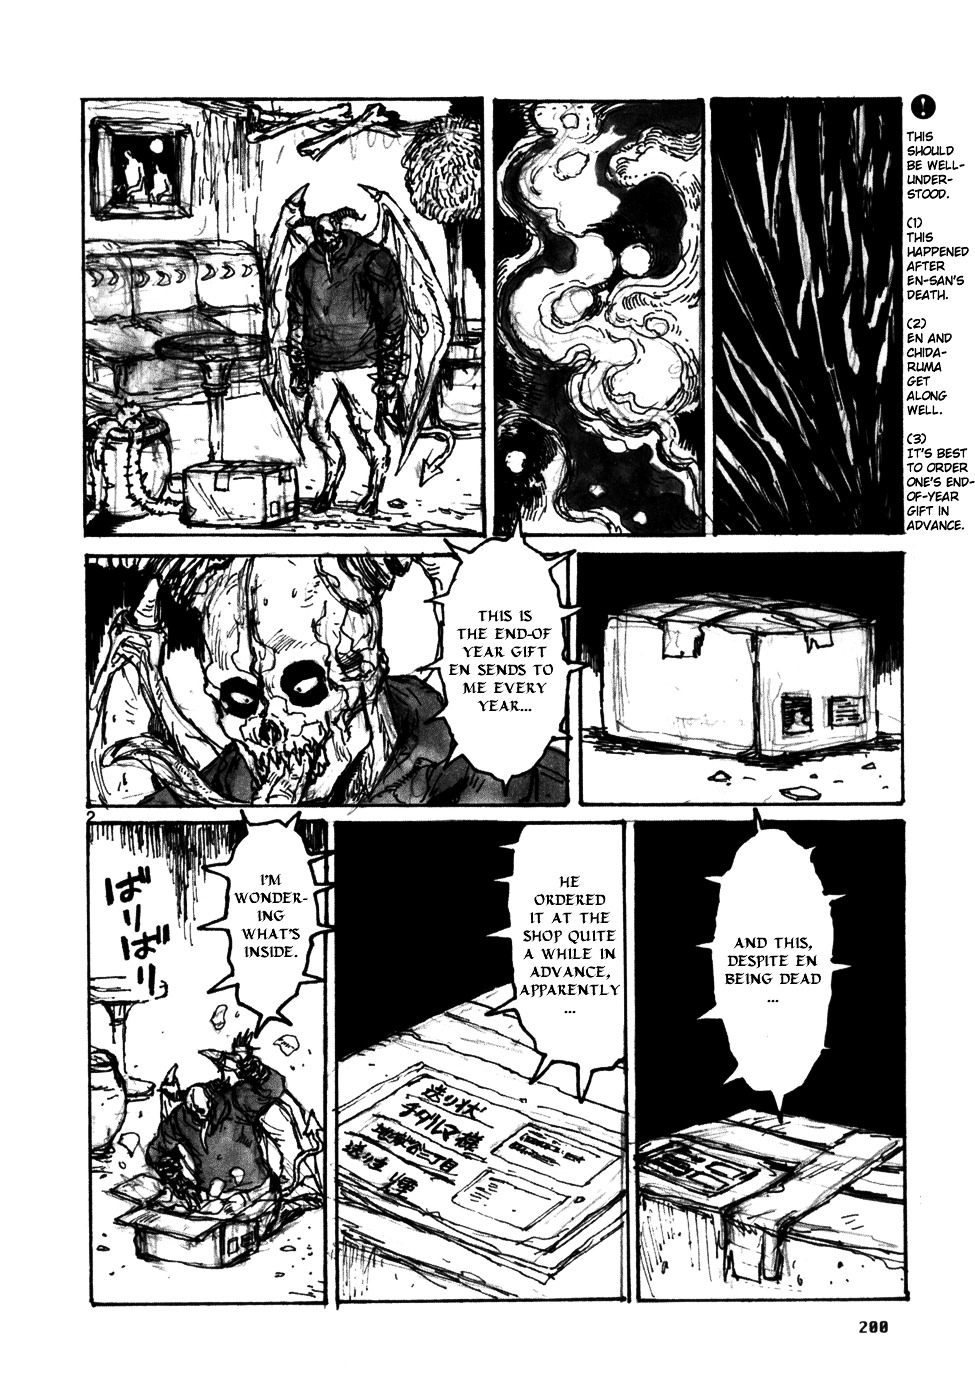 Dorohedoro manga,Dorohedoro, read Dorohedoro manga, Dorohedoro,manga online, manga english, volume,manga